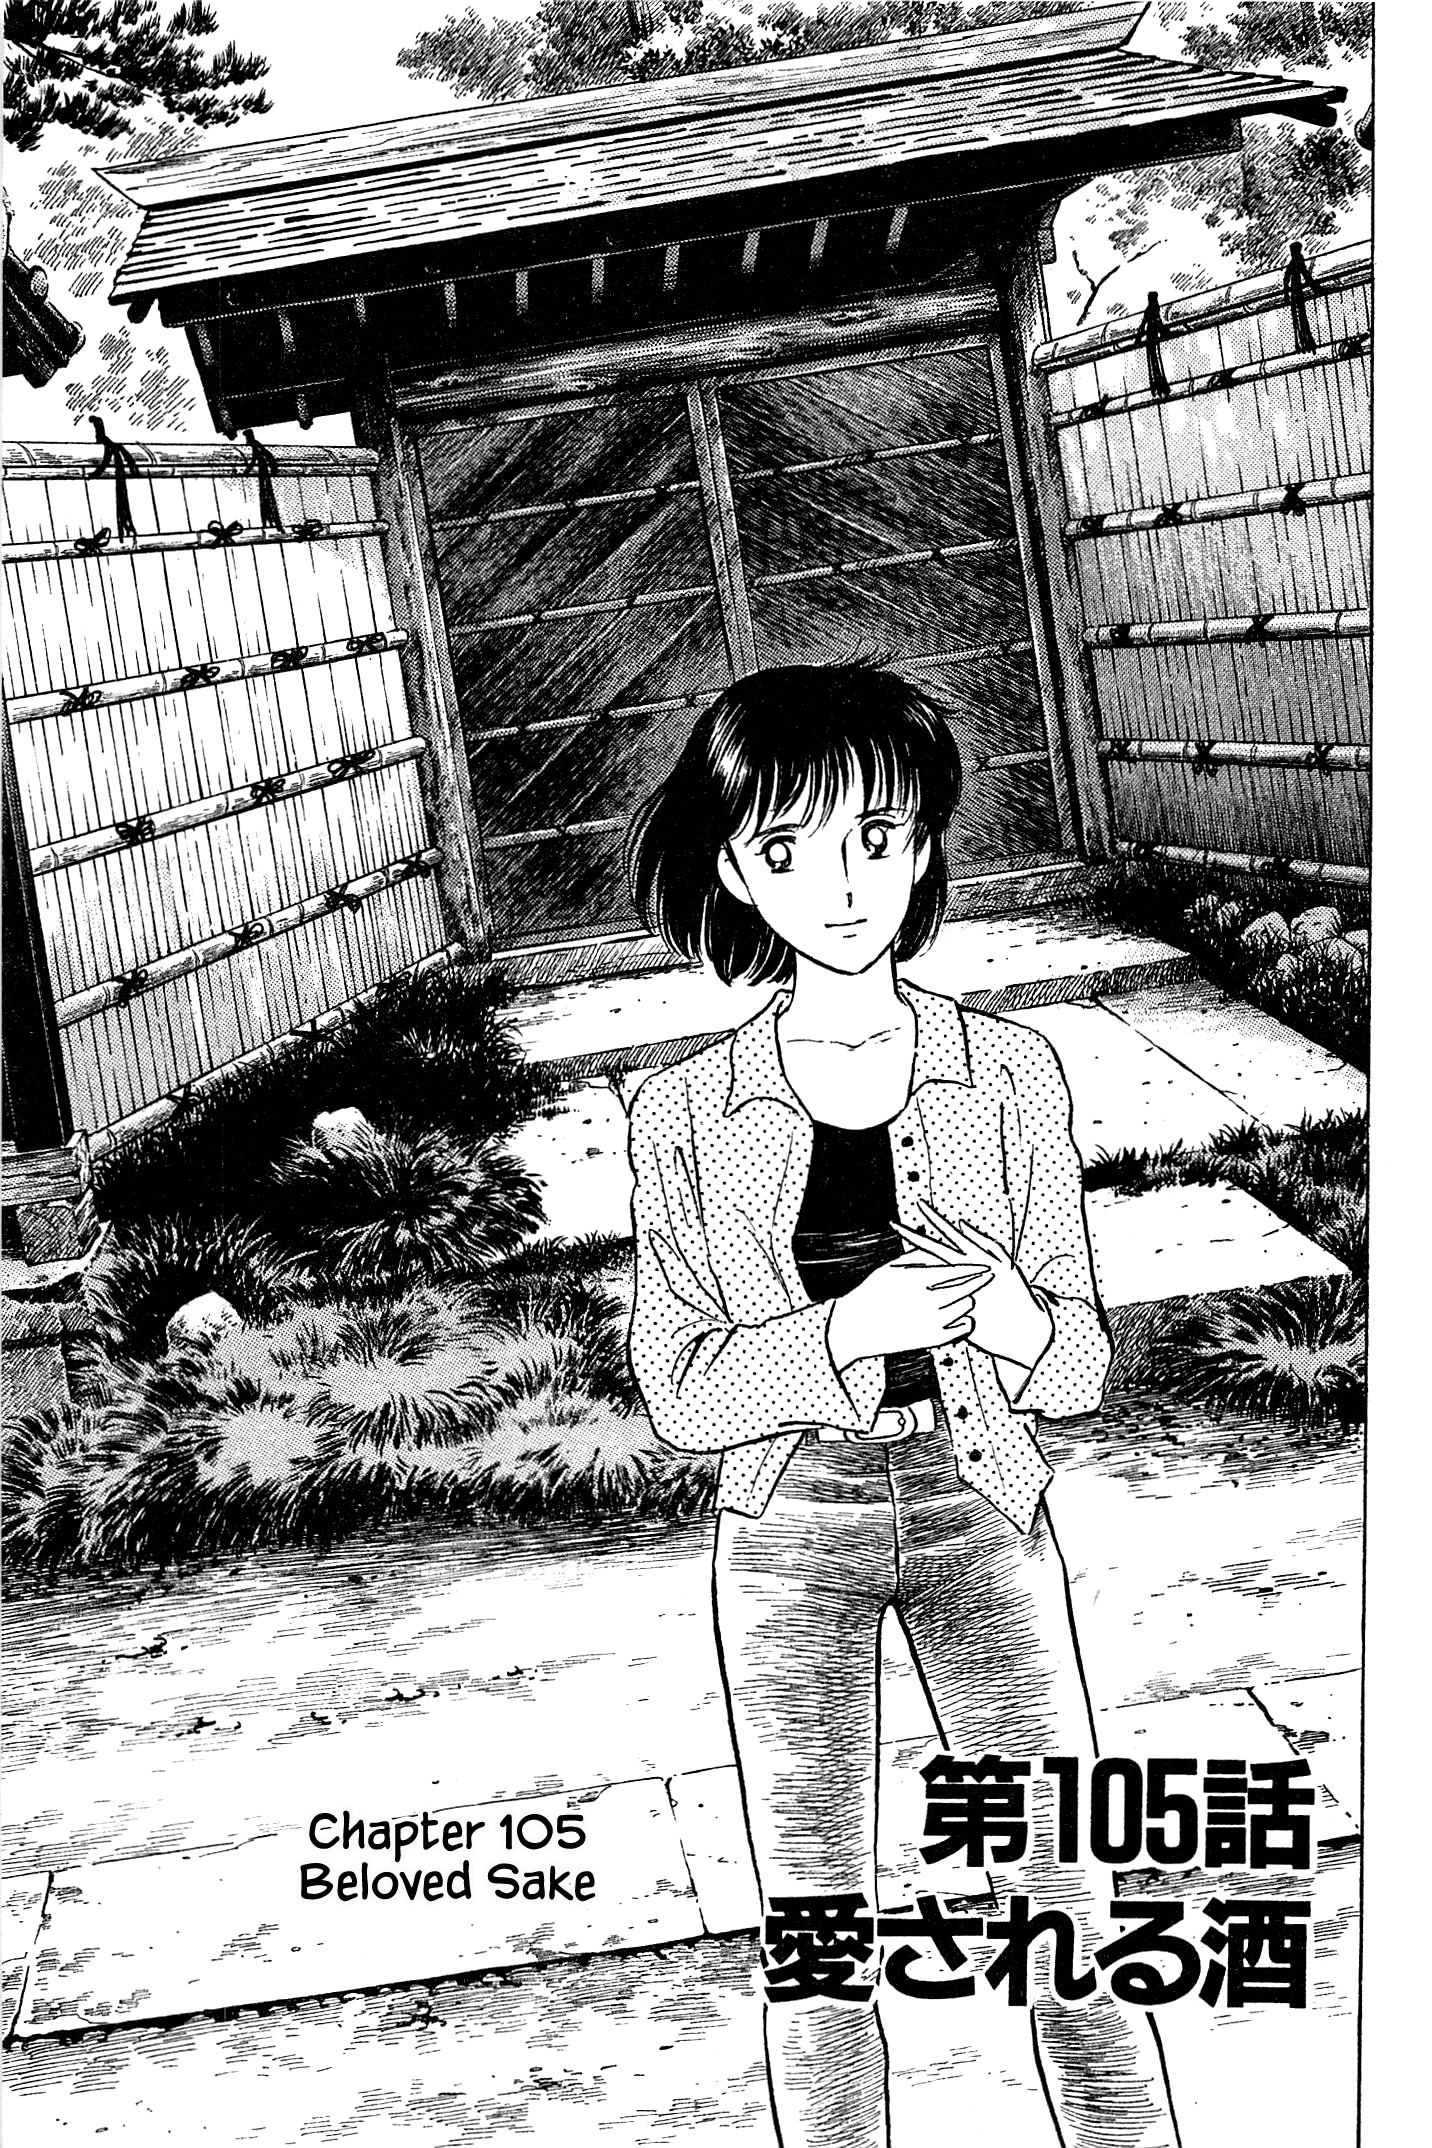 Natsuko's Sake - chapter 105 - #1